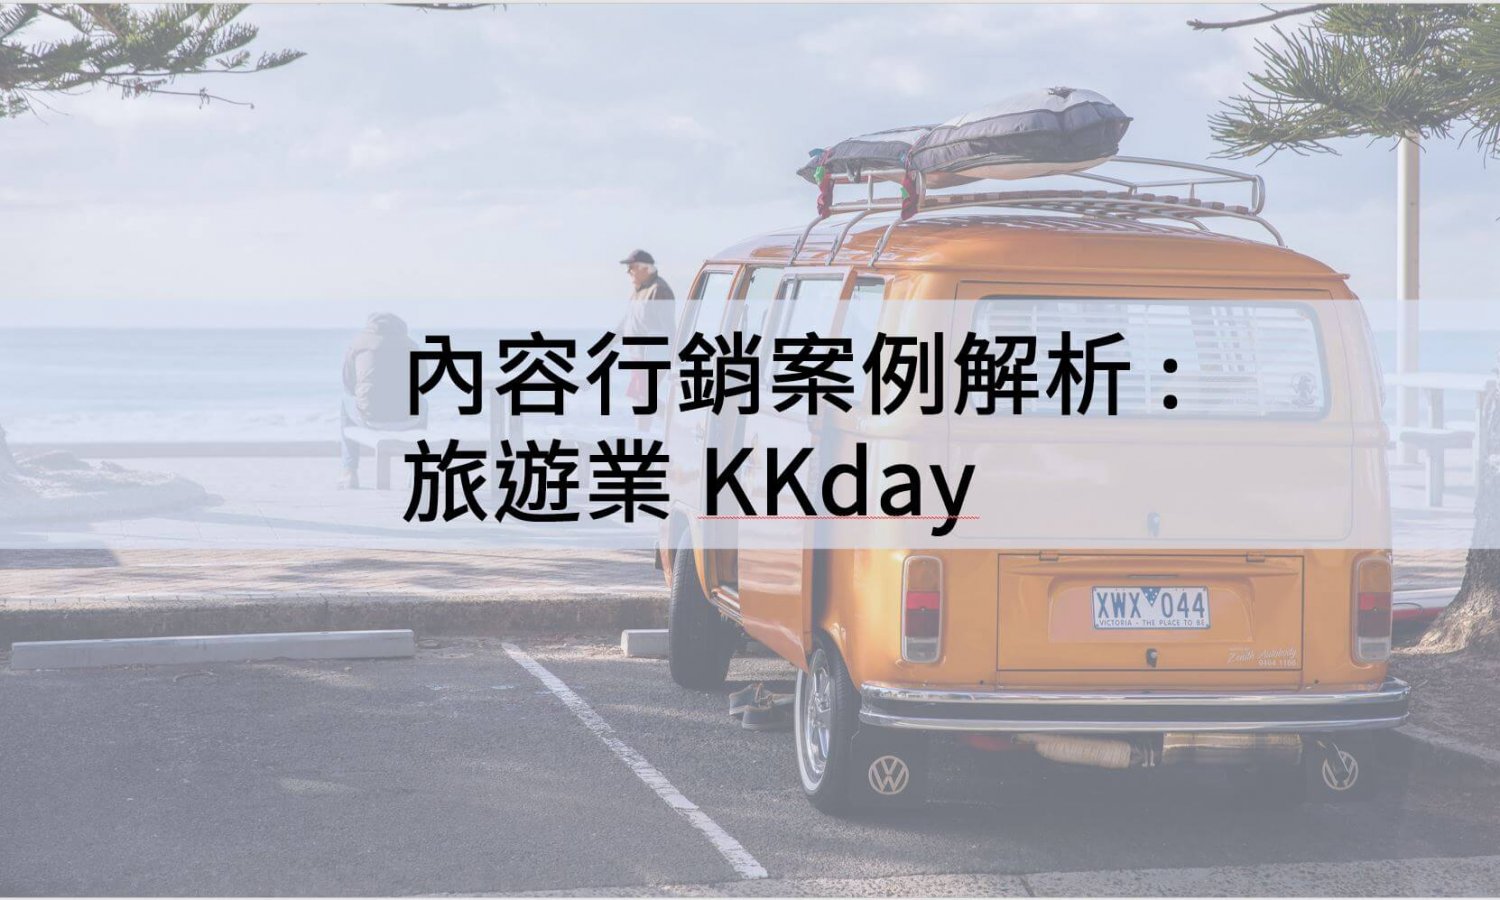 內容行銷案例解析 : 旅遊業 KKday